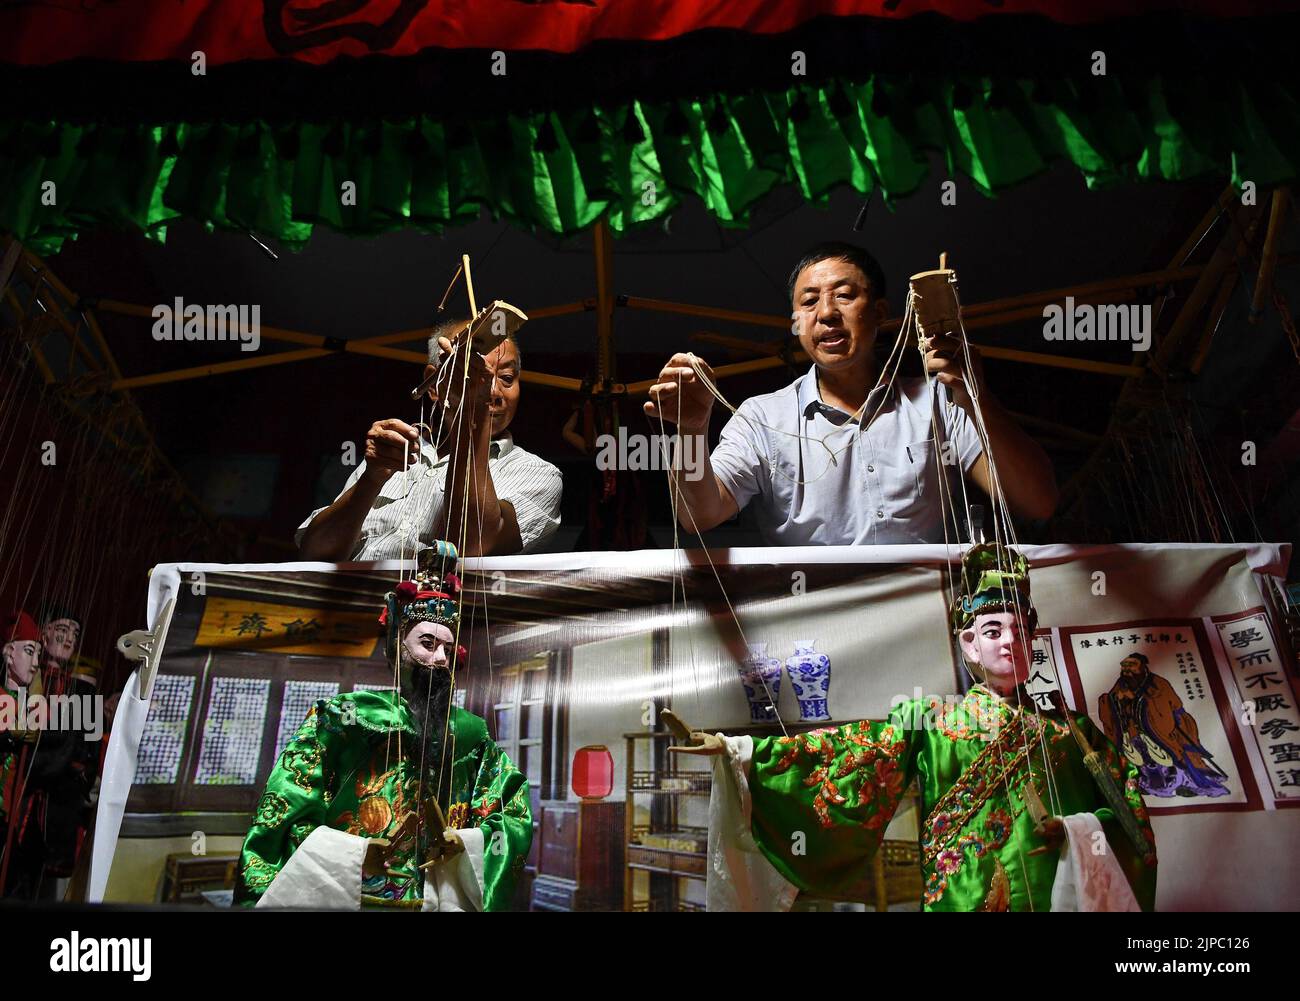 (220817) -- NANCHANG, 17 de agosto de 2022 (Xinhua) -- Xie Bangyin (R), cabeza de la compañía títere de Qixin, actúa con miembros de la compañía en el pueblo de Dazhu, en el municipio de Tangfang, en el condado de Guangchang, provincia de Jiangxi, China oriental, el 10 de agosto de 2022. Tangfang es una ópera en la que los artistas interpretan historias con títeres. La marioneta fue catalogada como patrimonio cultural intangible provincial en 2013.En 1997, Xie Bangyin, un tiritero folclórico de Tangfang, fundó la trucha de marionetas de Qixin junto con otros tiriteros. Durante los festivales y eventos importantes, las aldeas locales invitarían a la compañía a realizar títeres. Por encima de las pas Foto de stock